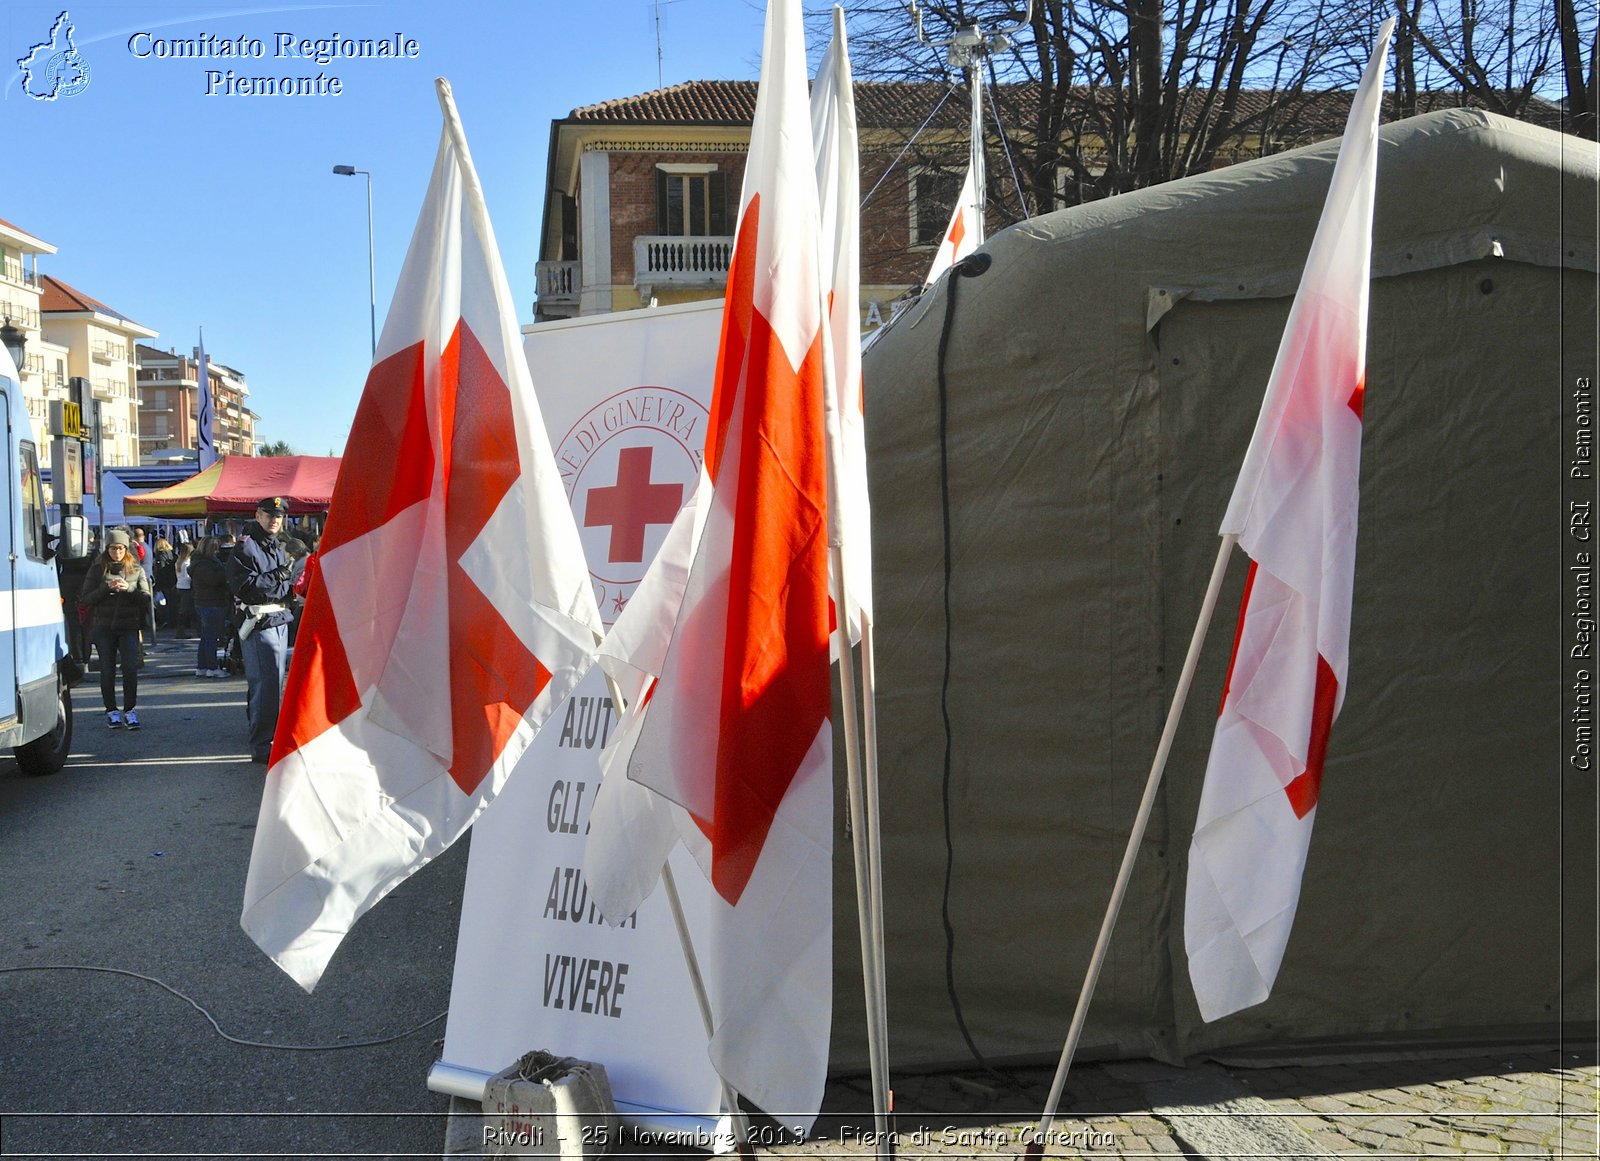 Rivoli - 25 Novembrebre 2013 - Fiera di Santa Caterina - Comitato Regionale del Piemonte